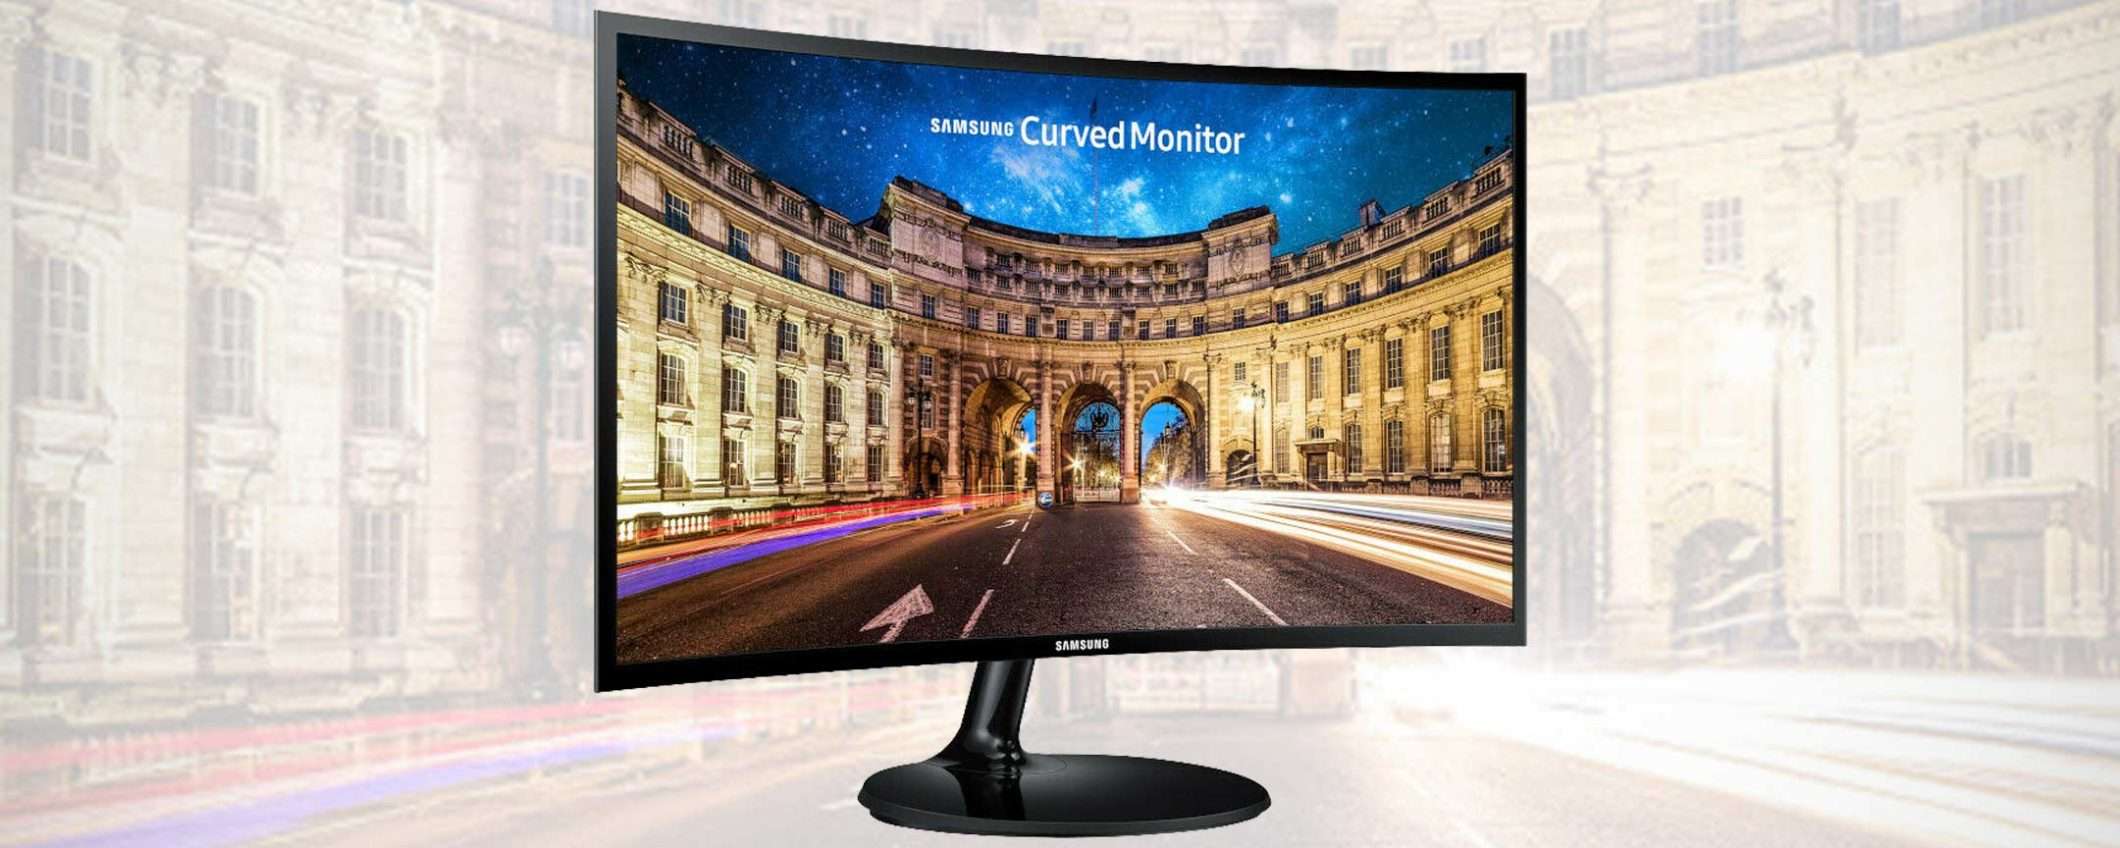 Il monitor curvo di Samsung a meno di 100 euro